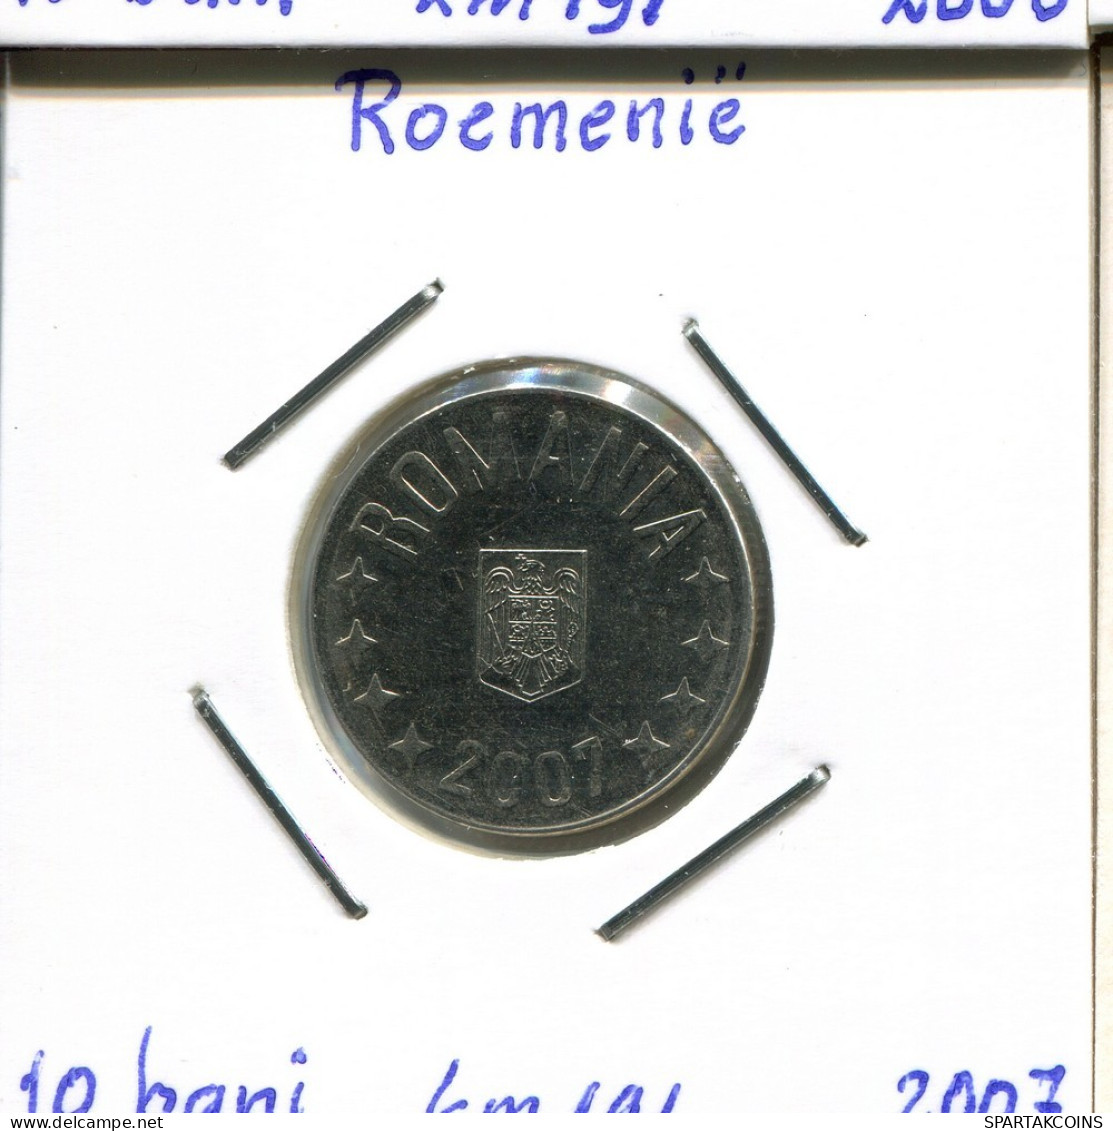 10 BANI 2007 ROMANIA Coin #AP642.2.U.A - Roumanie